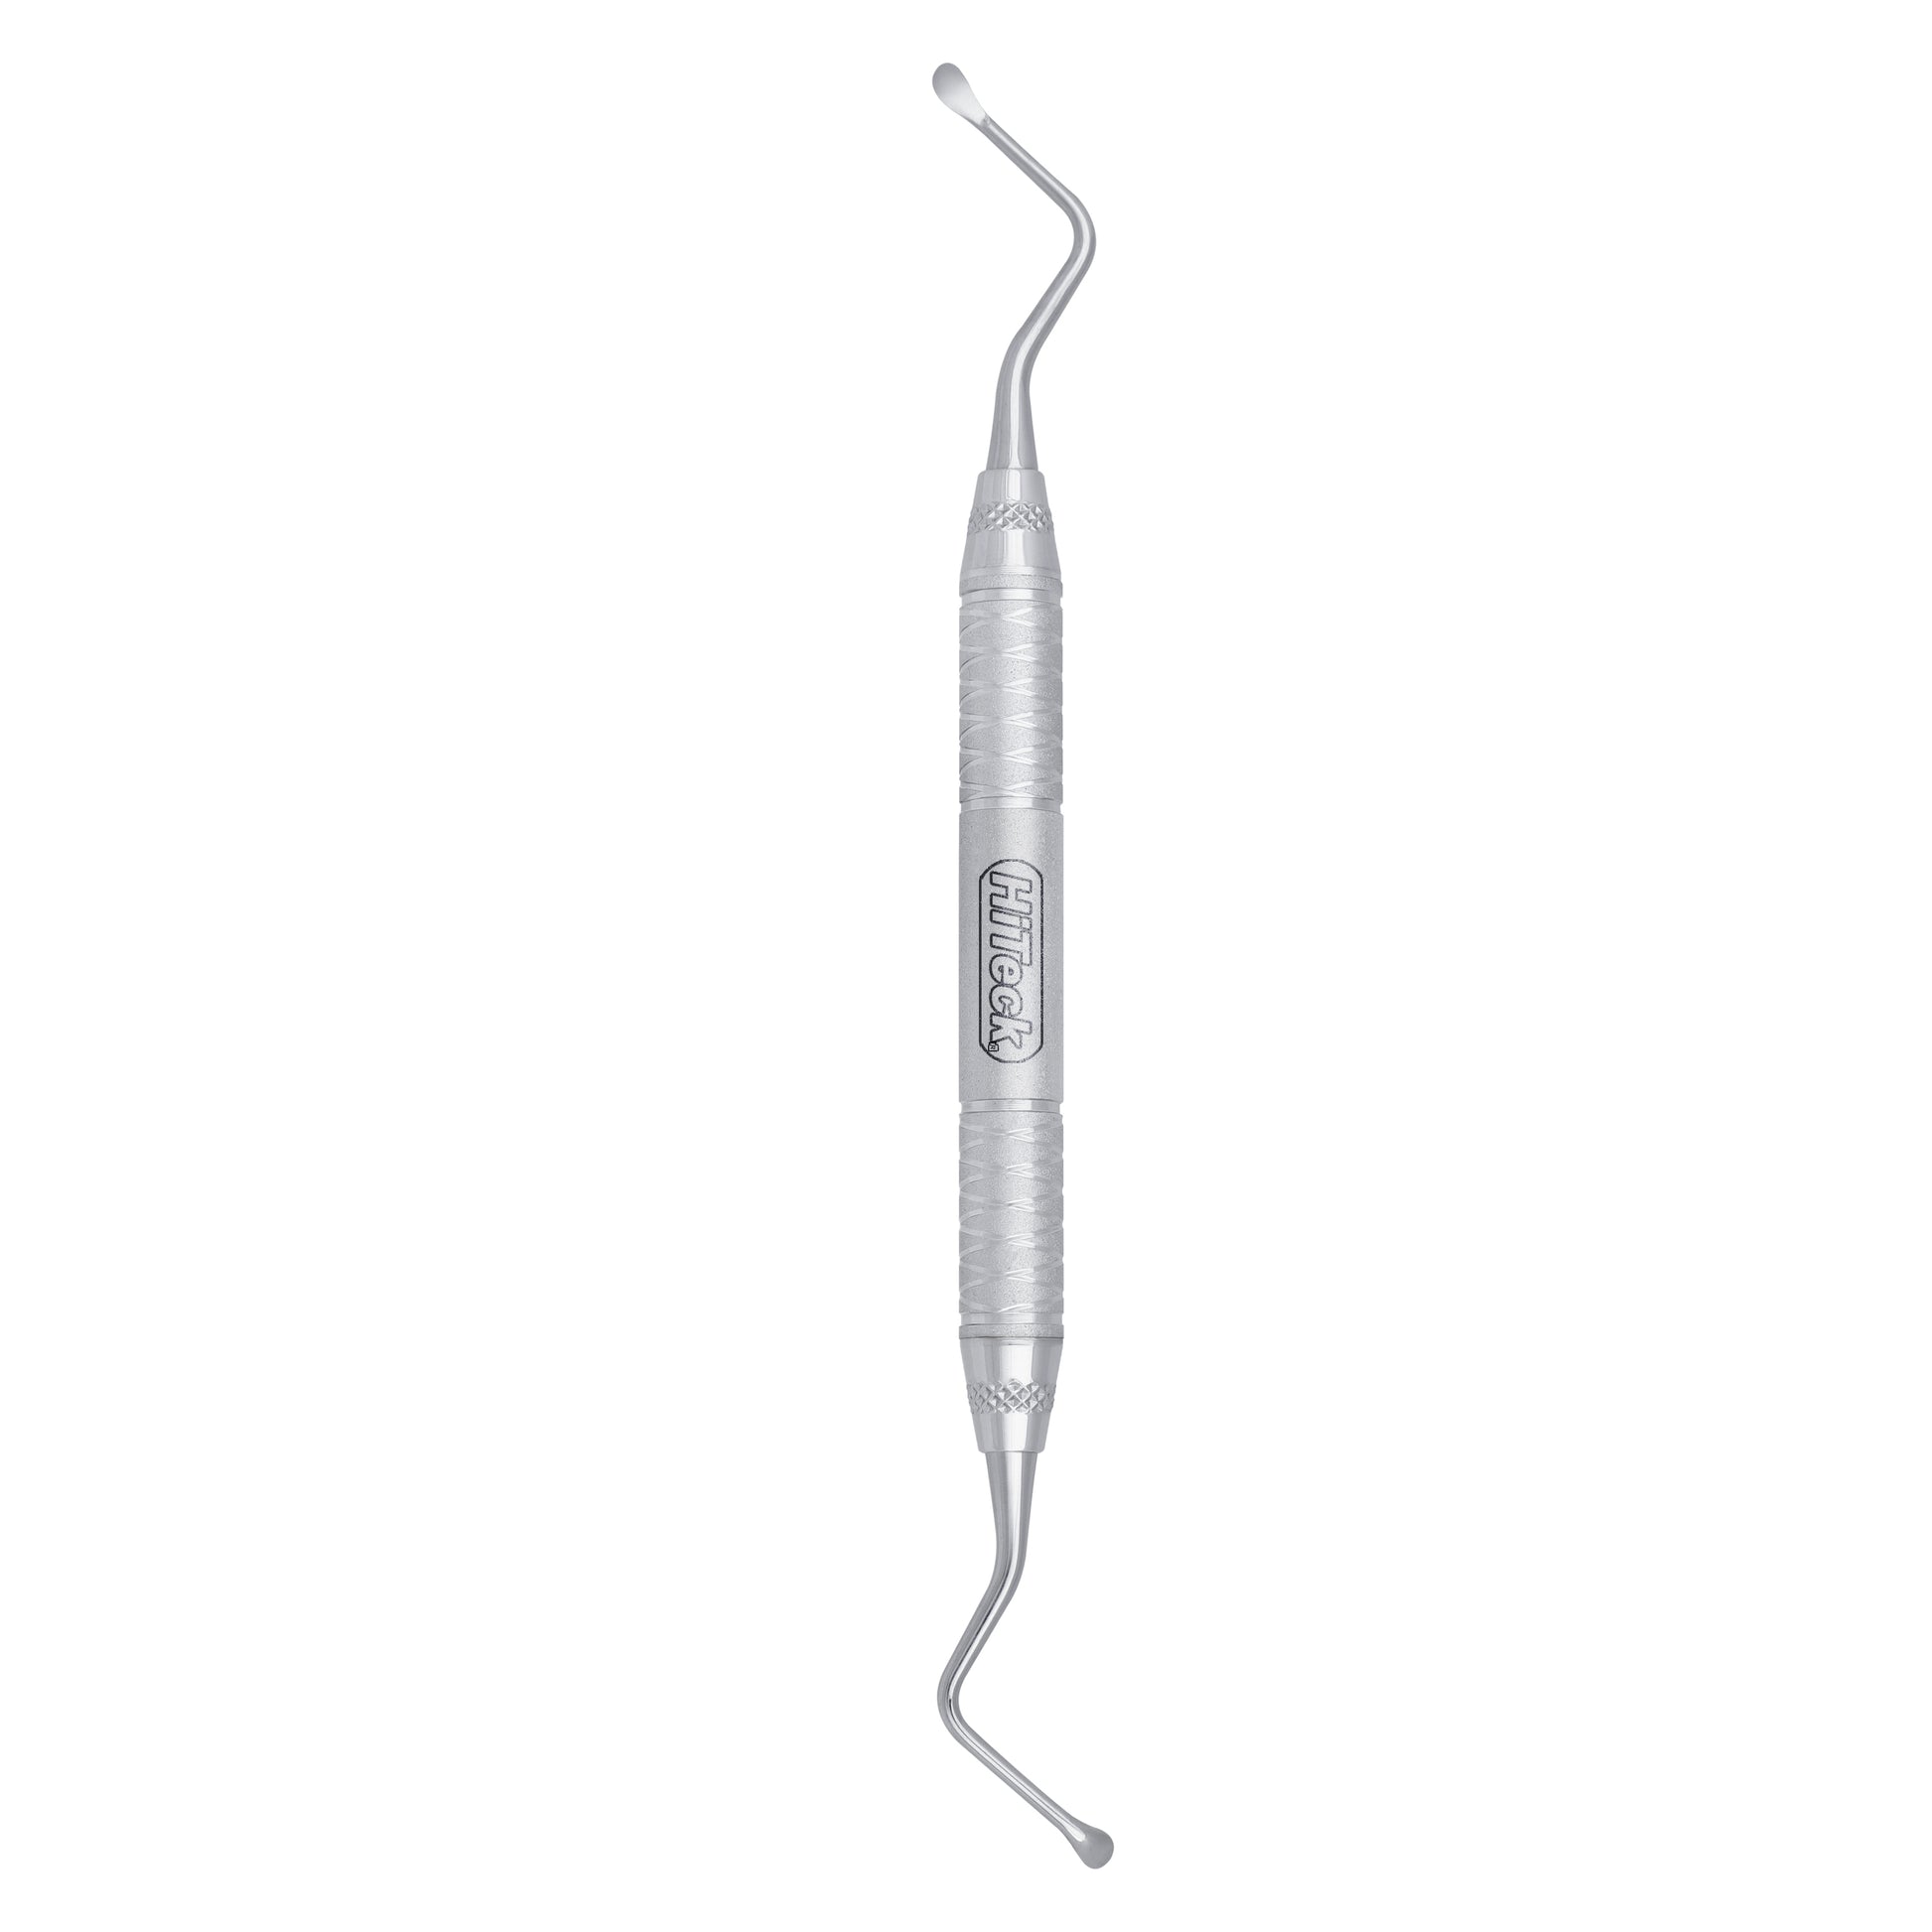 87 Lucas Spoon Shape Surgical Curette, 3.5MM - HiTeck Medical Instruments